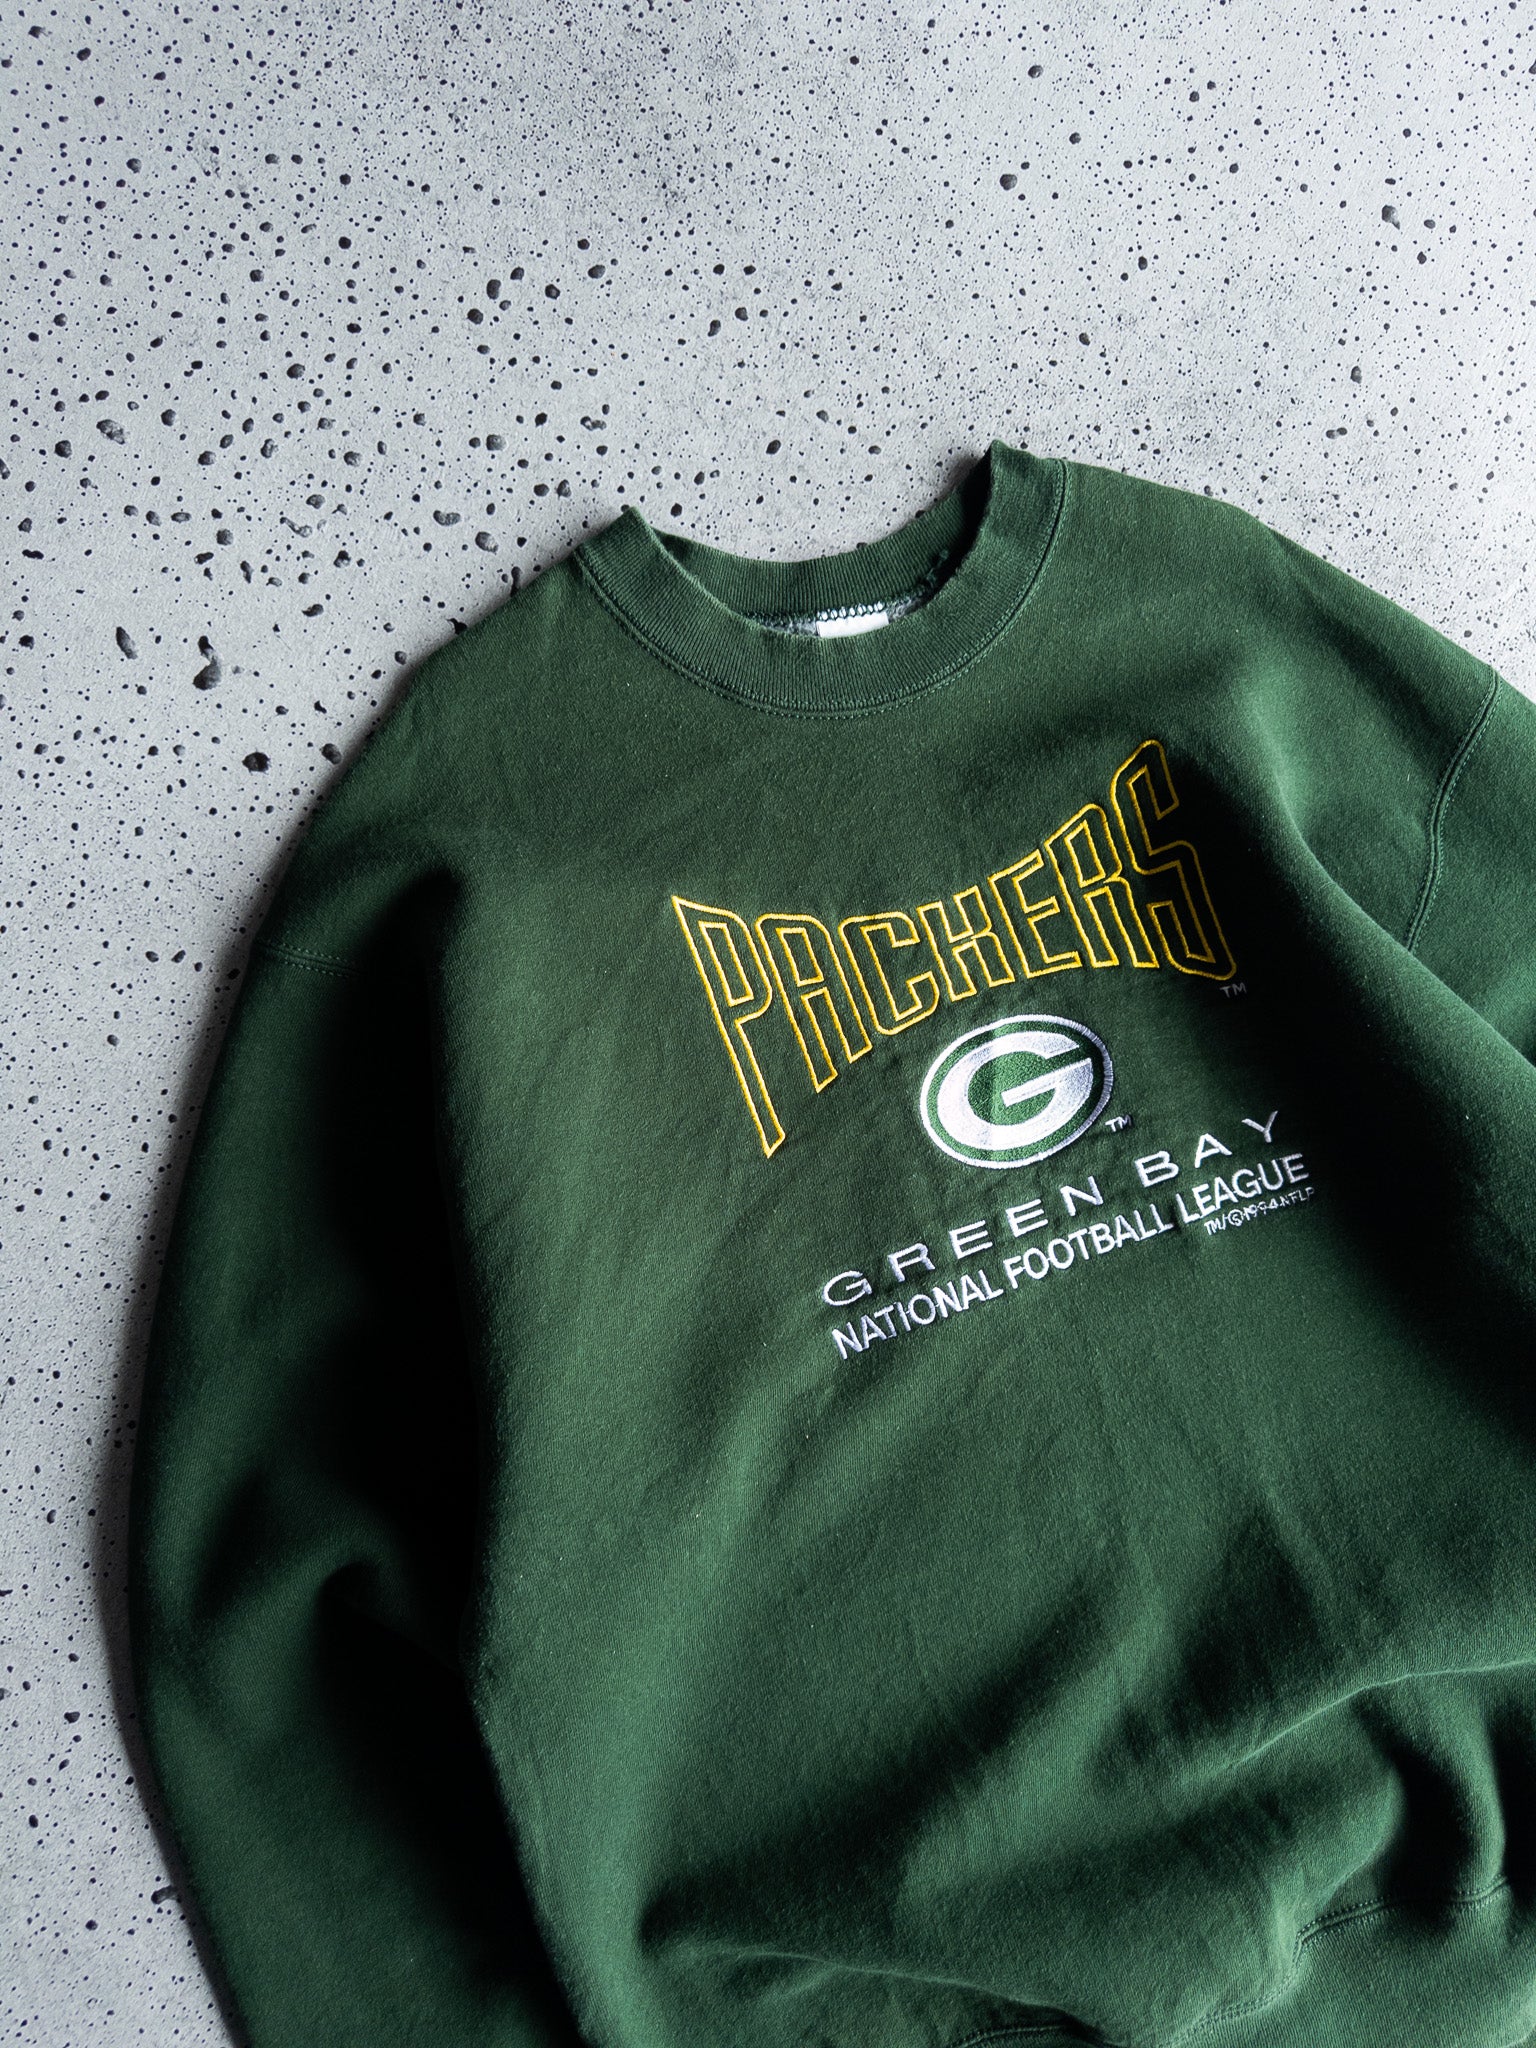 Vintage Green Bay Packers Sweatshirt (XL)